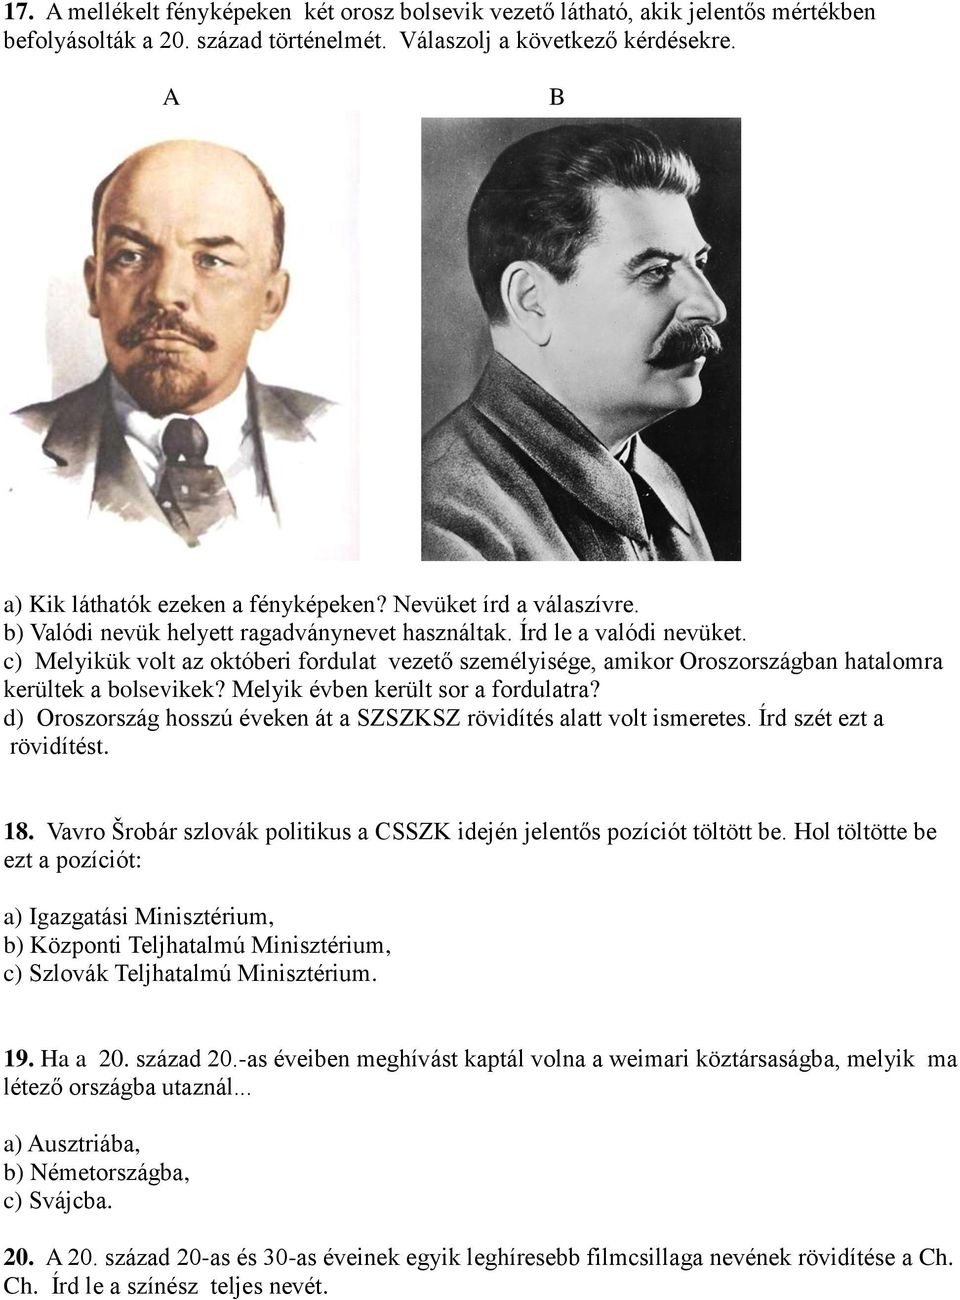 c) Melyikük volt az októberi fordulat vezető személyisége, amikor Oroszországban hatalomra kerültek a bolsevikek? Melyik évben került sor a fordulatra?